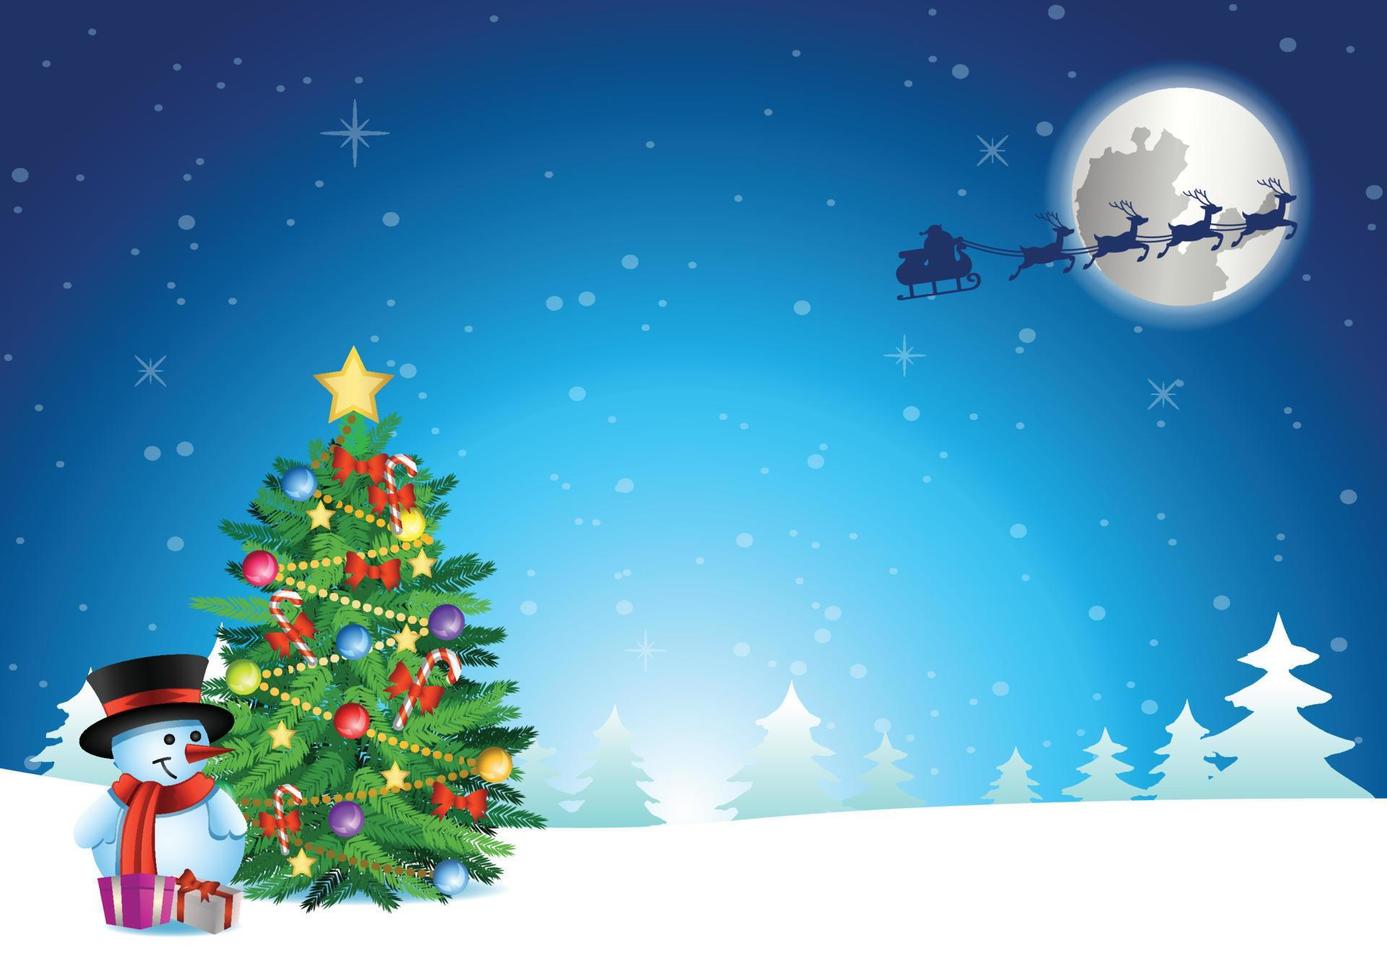 El muñeco de nieve y el árbol de Navidad se paran en la nieve mientras Papá Noel vuela después de enviarle un regalo vector